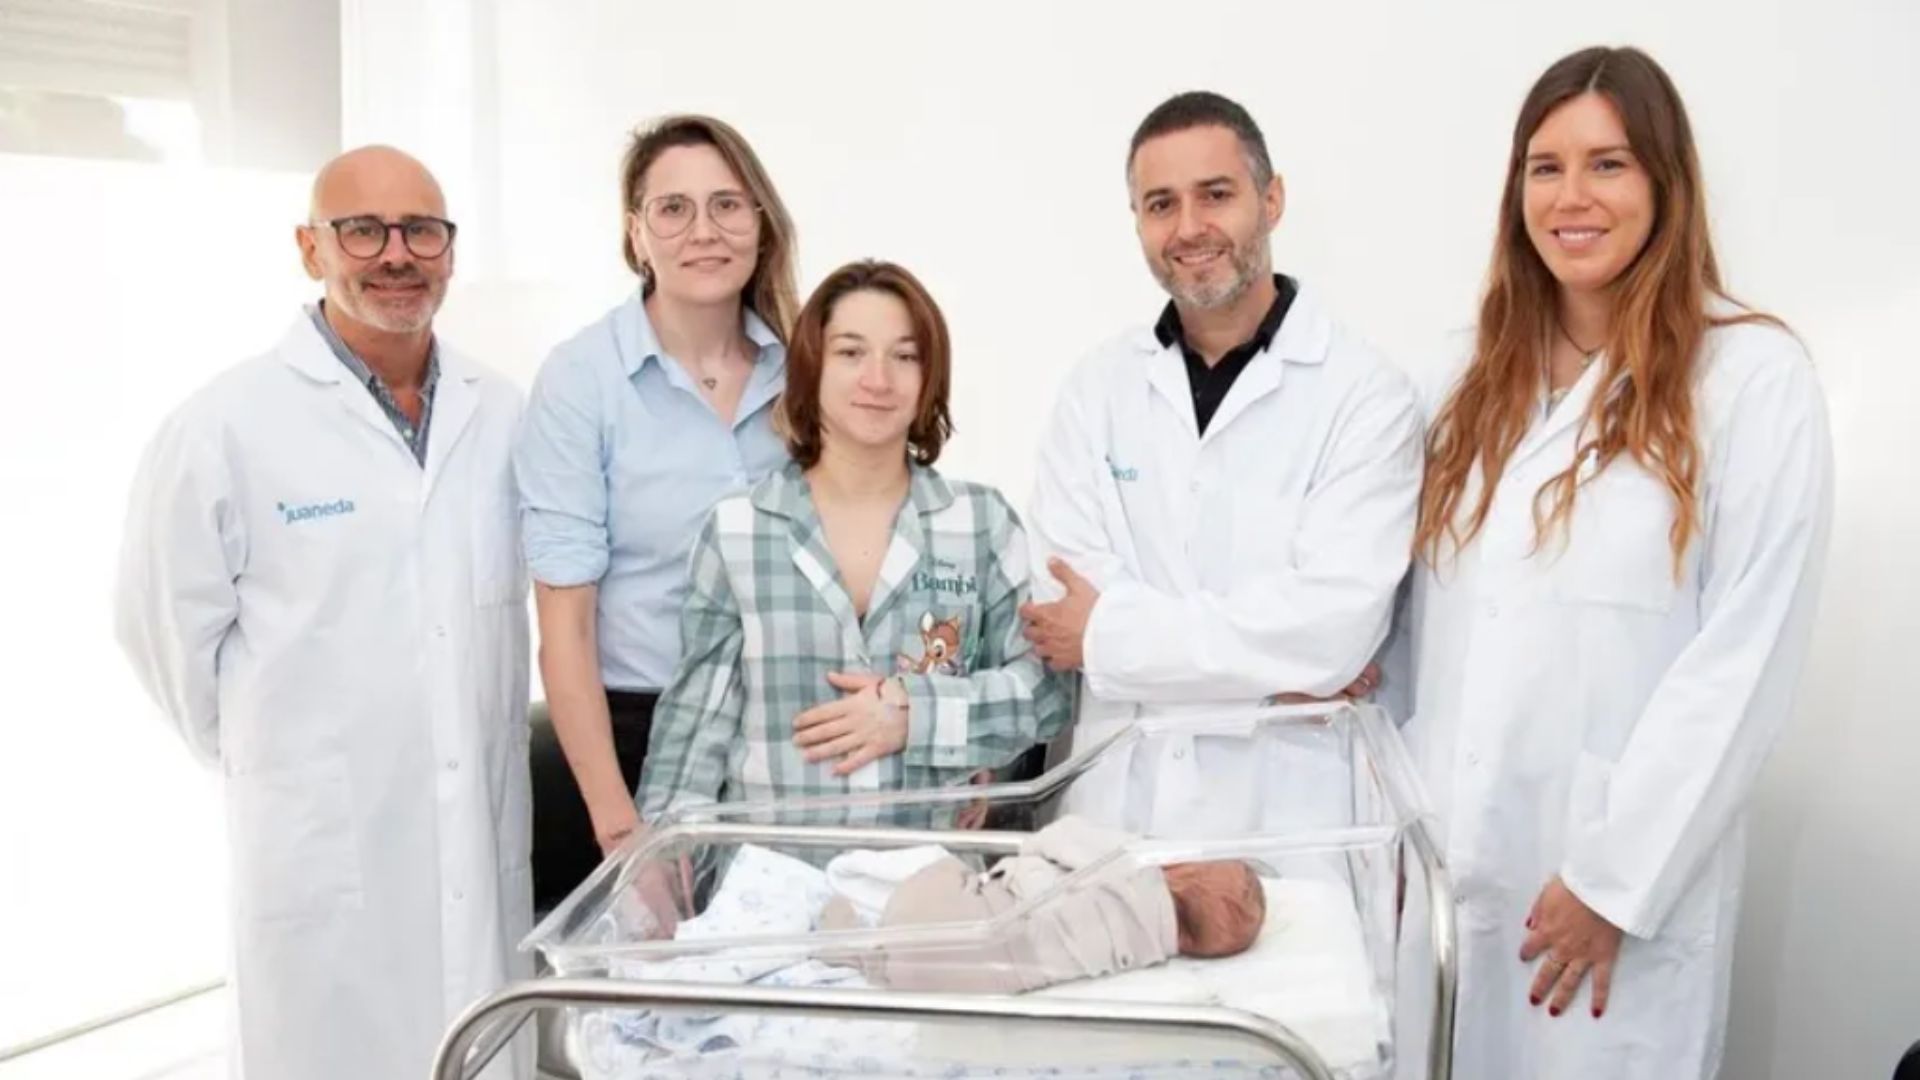 Hospital inova com iniciativa de fazer primeiro contato do bebê